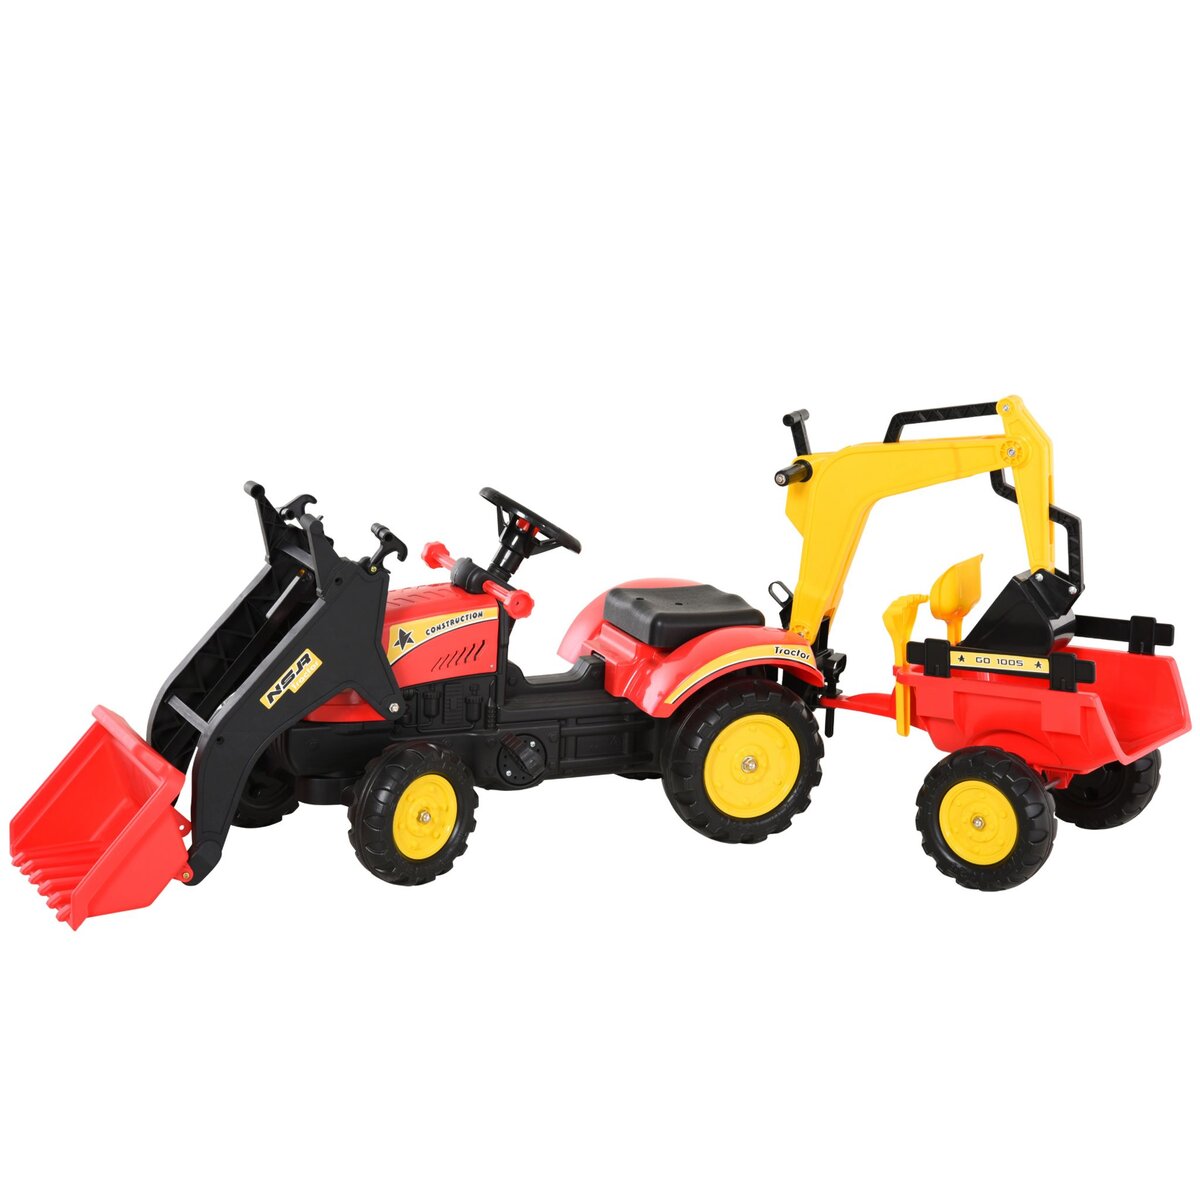 HOMCOM Tracteur à pédales tractopelle double avec remorque pelle et rateau jeu de plein air enfants 3 à 6 ans rouge noir